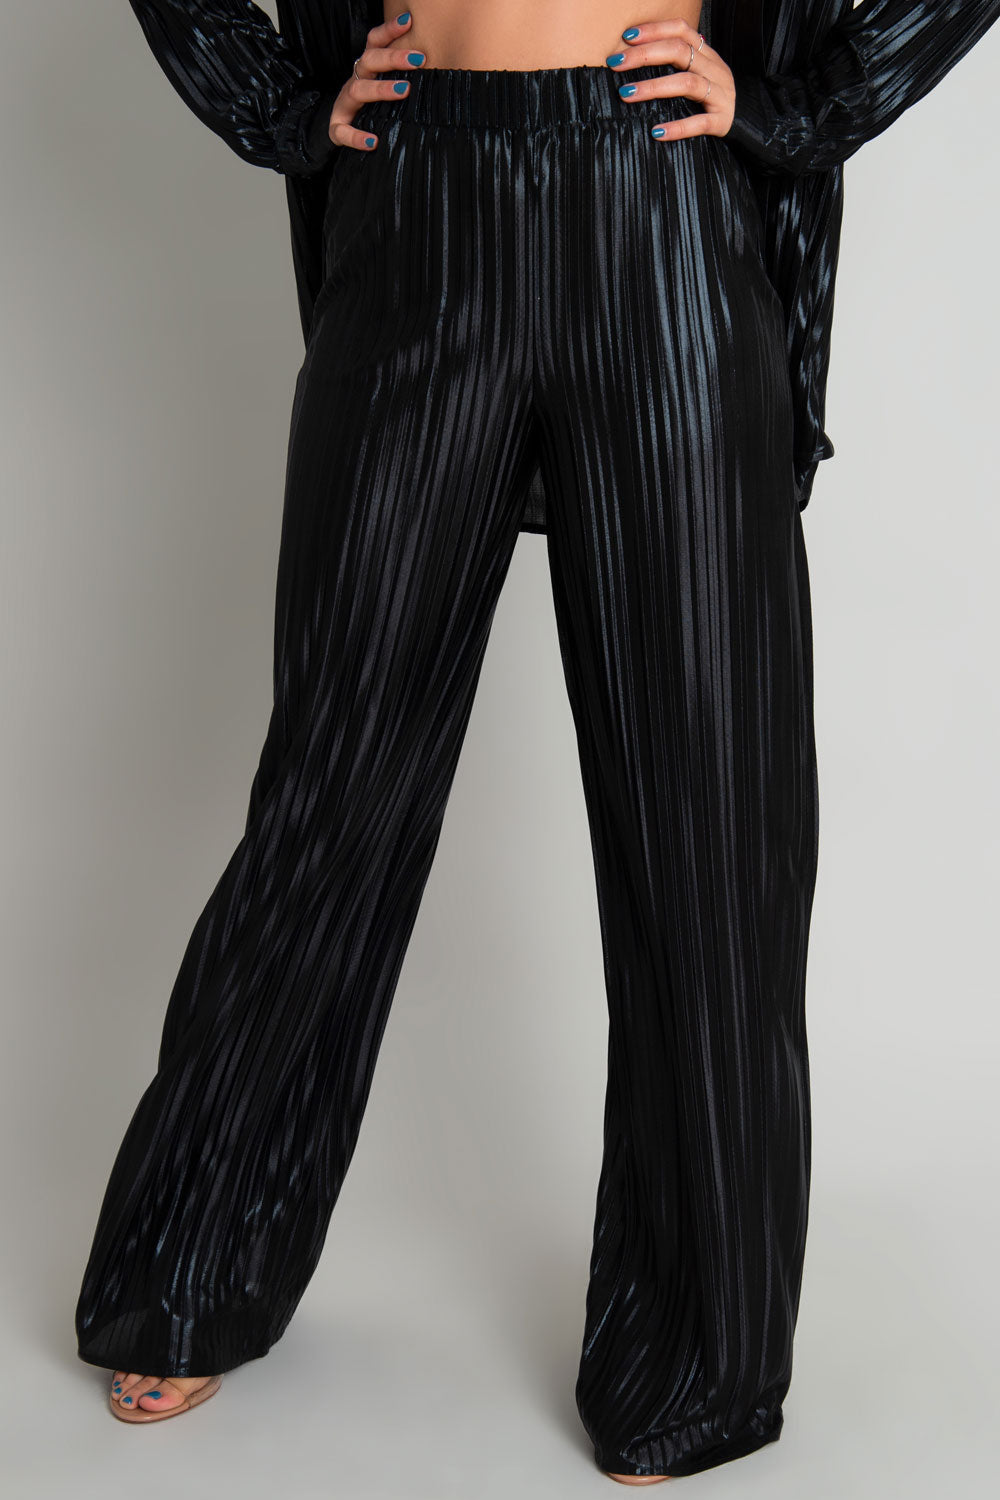 Pantalón satinado de fit wide leg, plisados en tejido y cintura alta con pretina elástica.